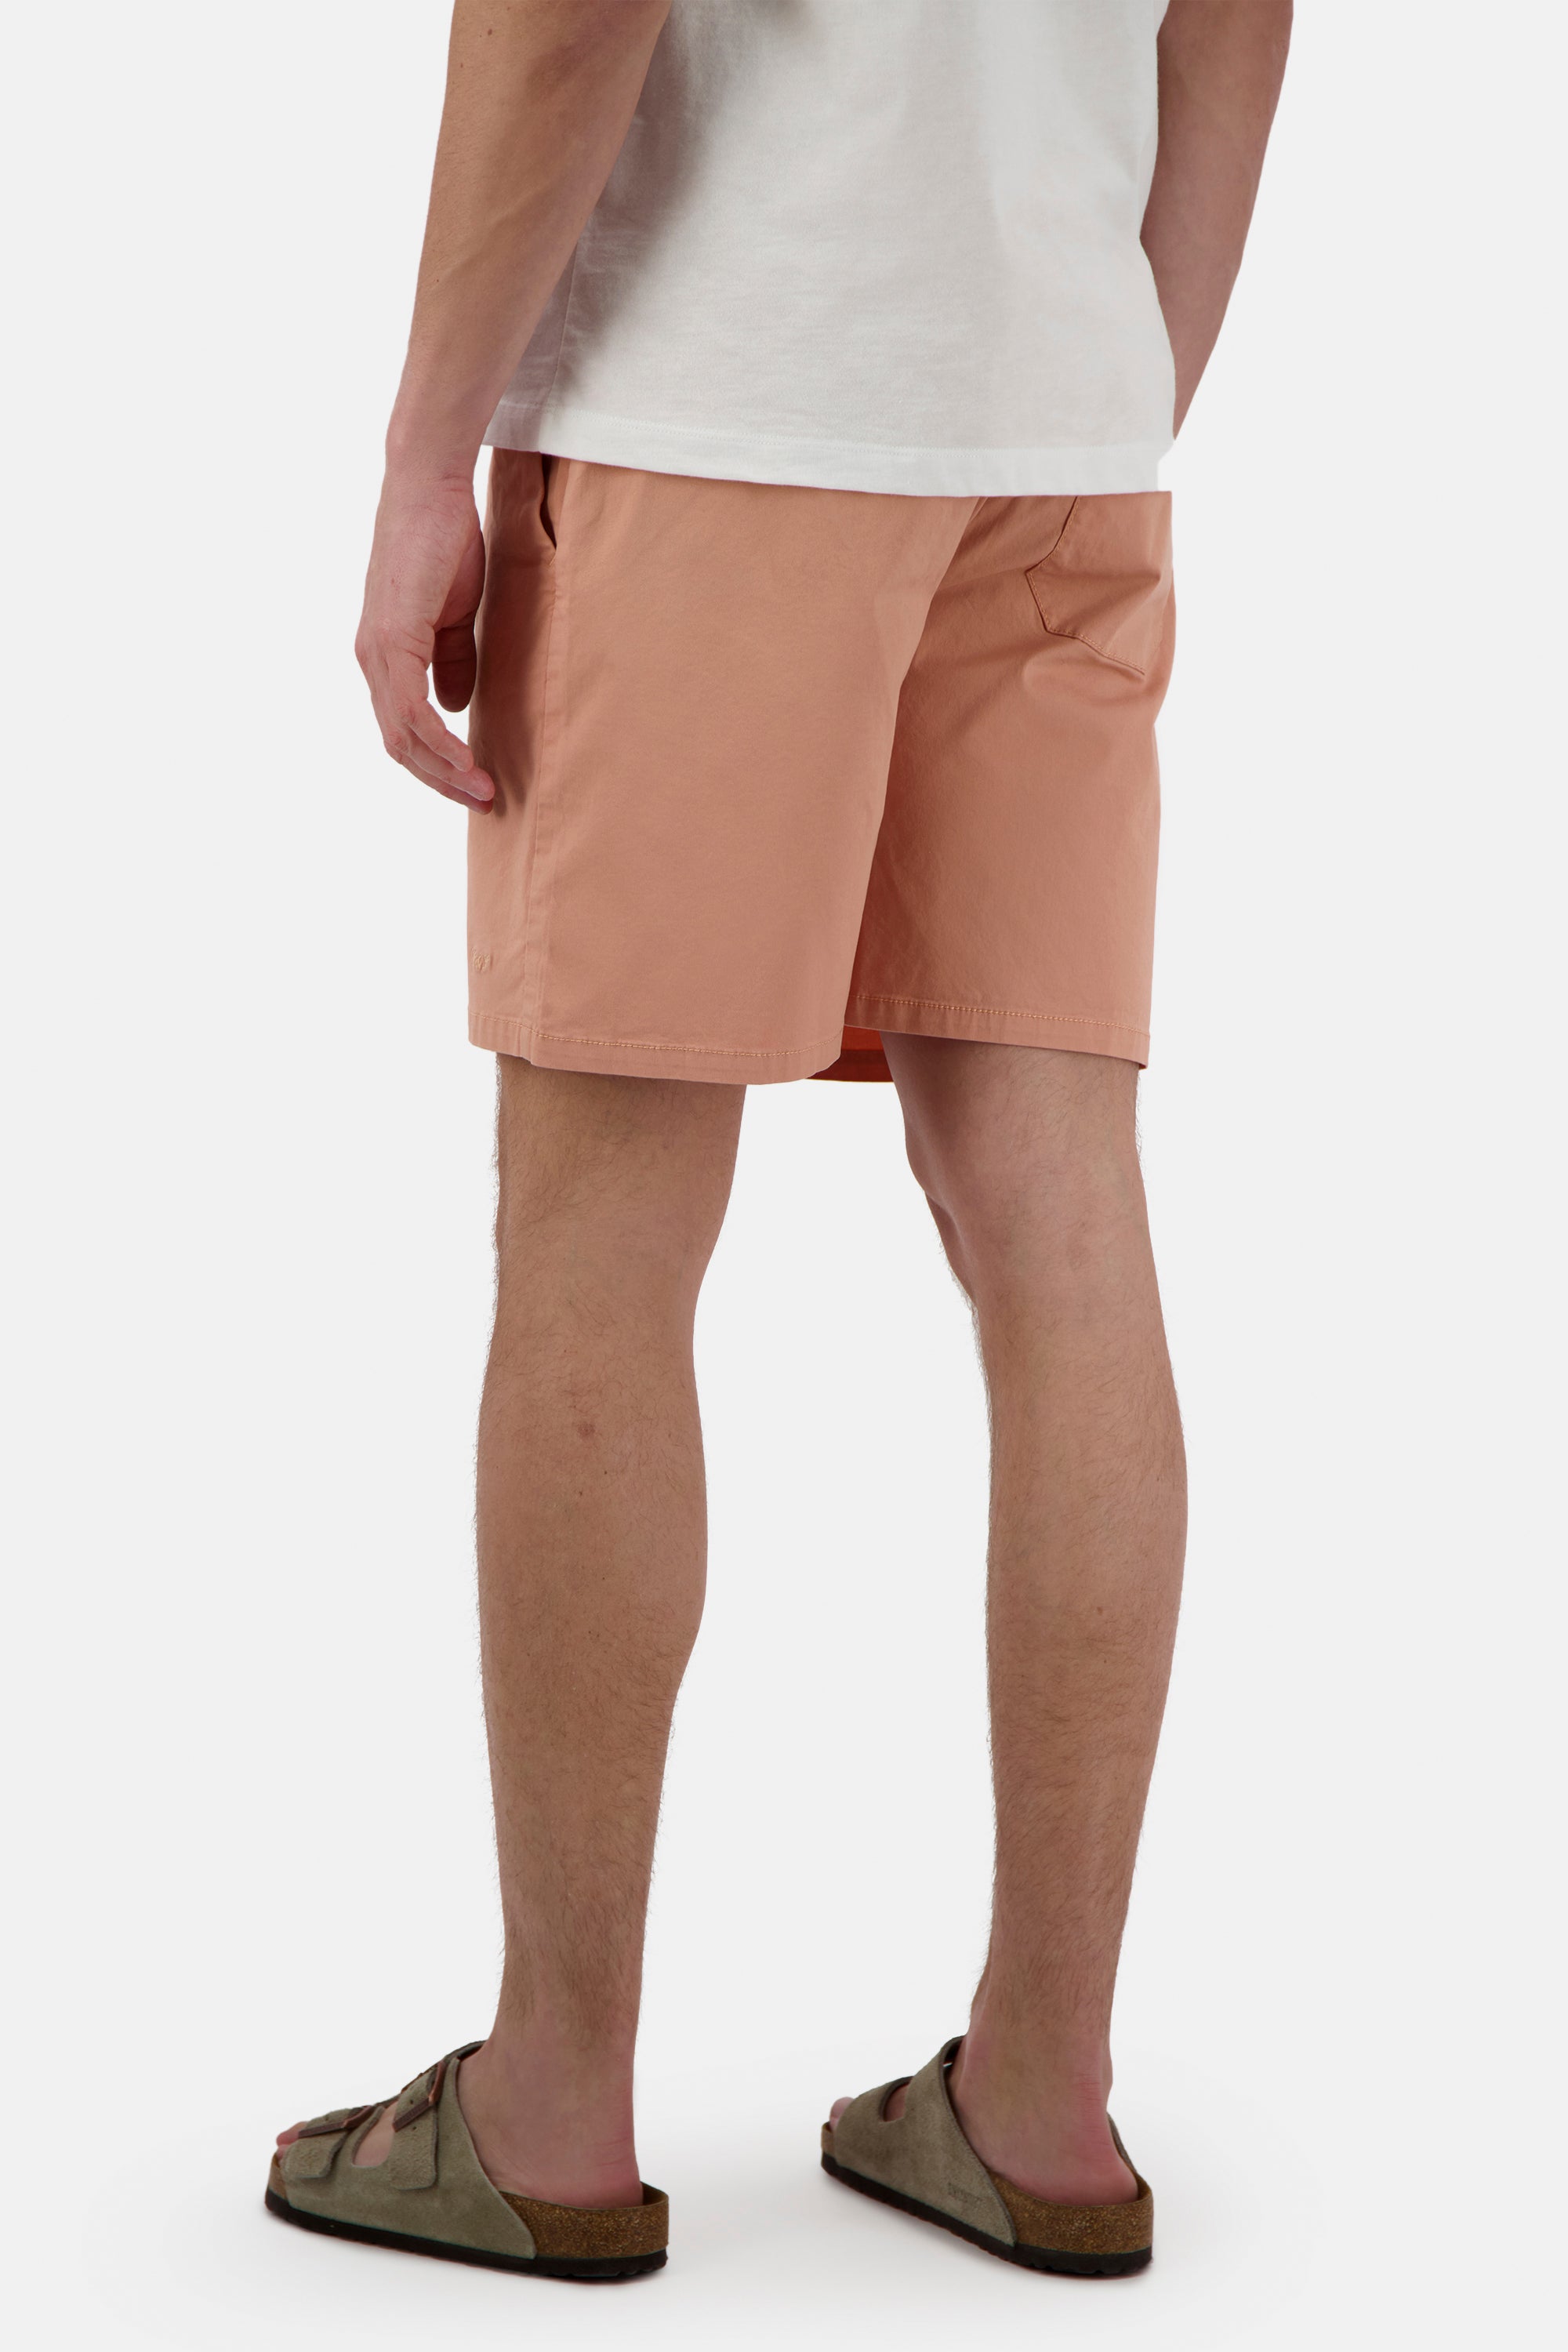 Herren Shorts, orange, 98% Baumwolle 2% Elastan von Colours & Sons